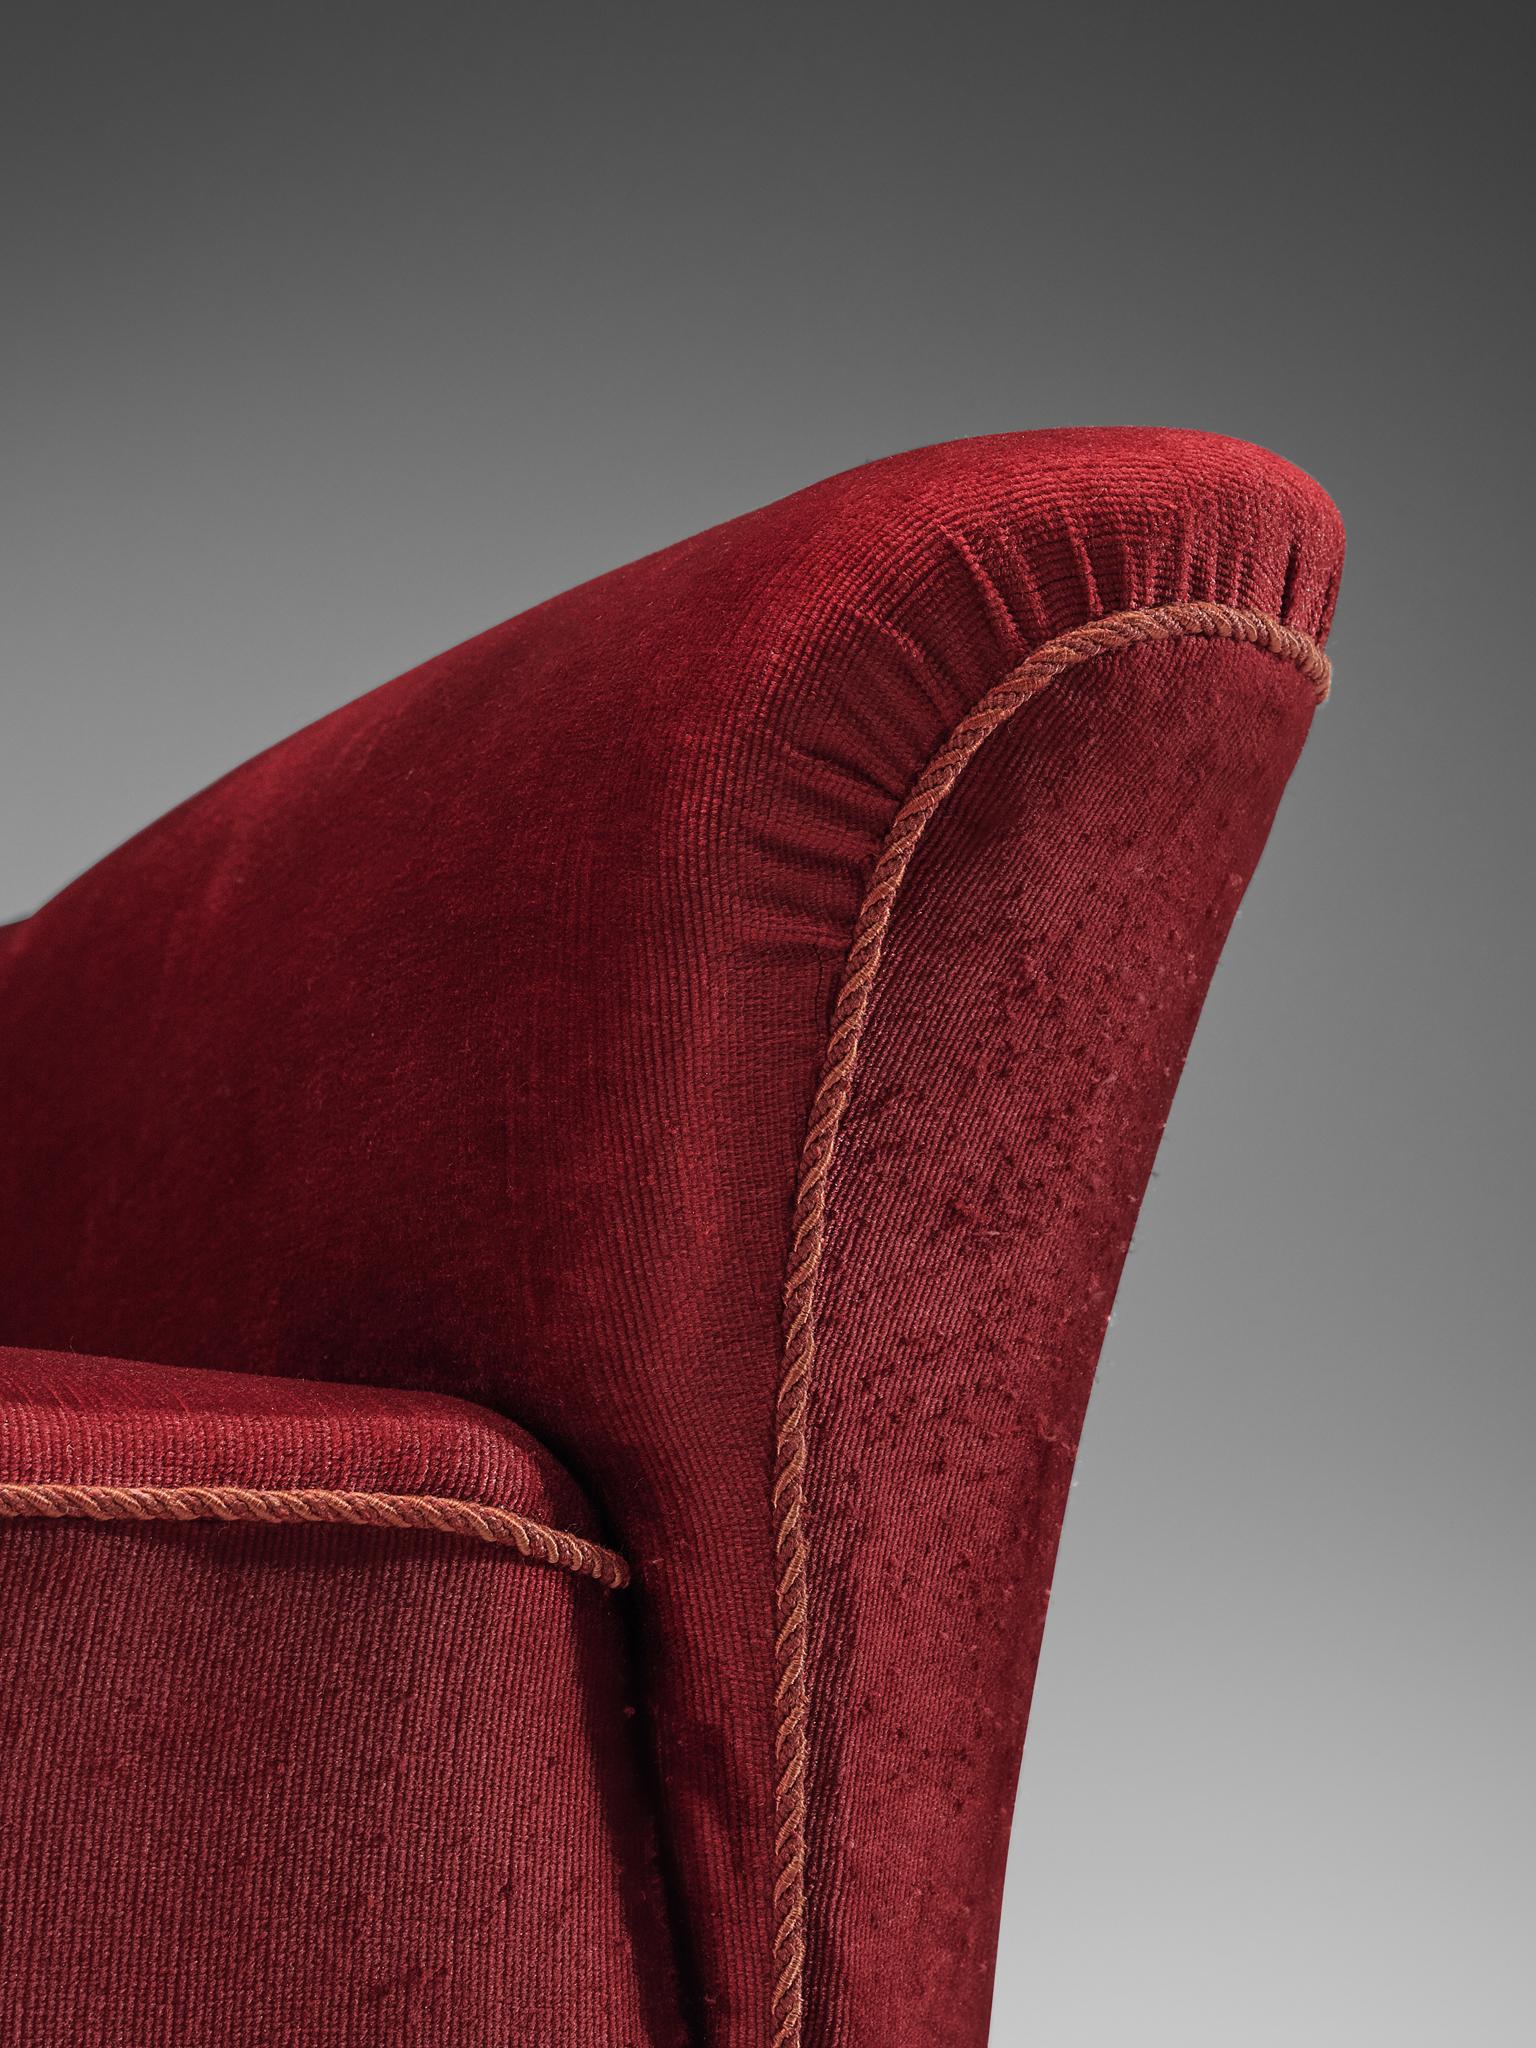 Danish Three-Seat Sofa in Red Velours, 1940s 1